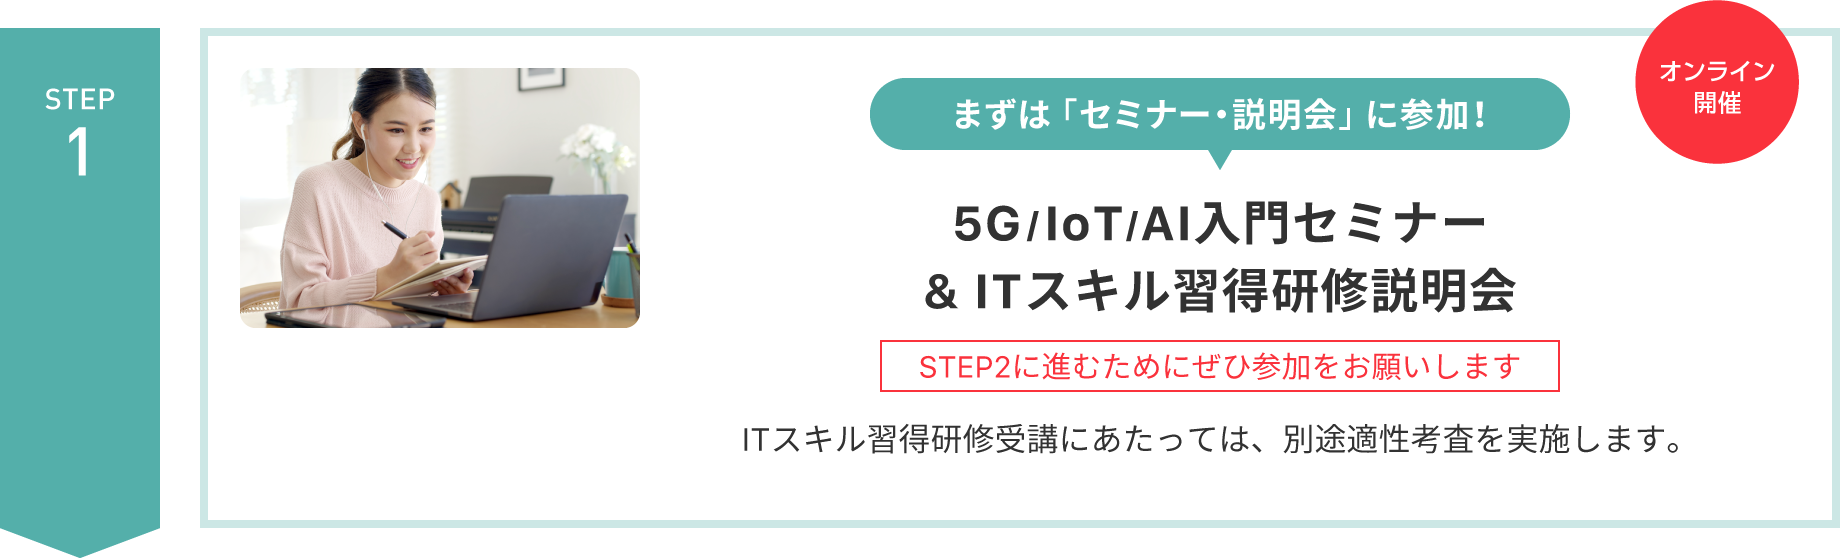 【STEP 1】まずは「セミナー・説明会」に参加！〈オンライン開催〉5G/IoT/AI入門セミナー & ITスキル習得研修説明会（STEP2に進むためにぜひ参加をお願いします）ITスキル習得研修受講にあたっては、別途適性考査を実施します。